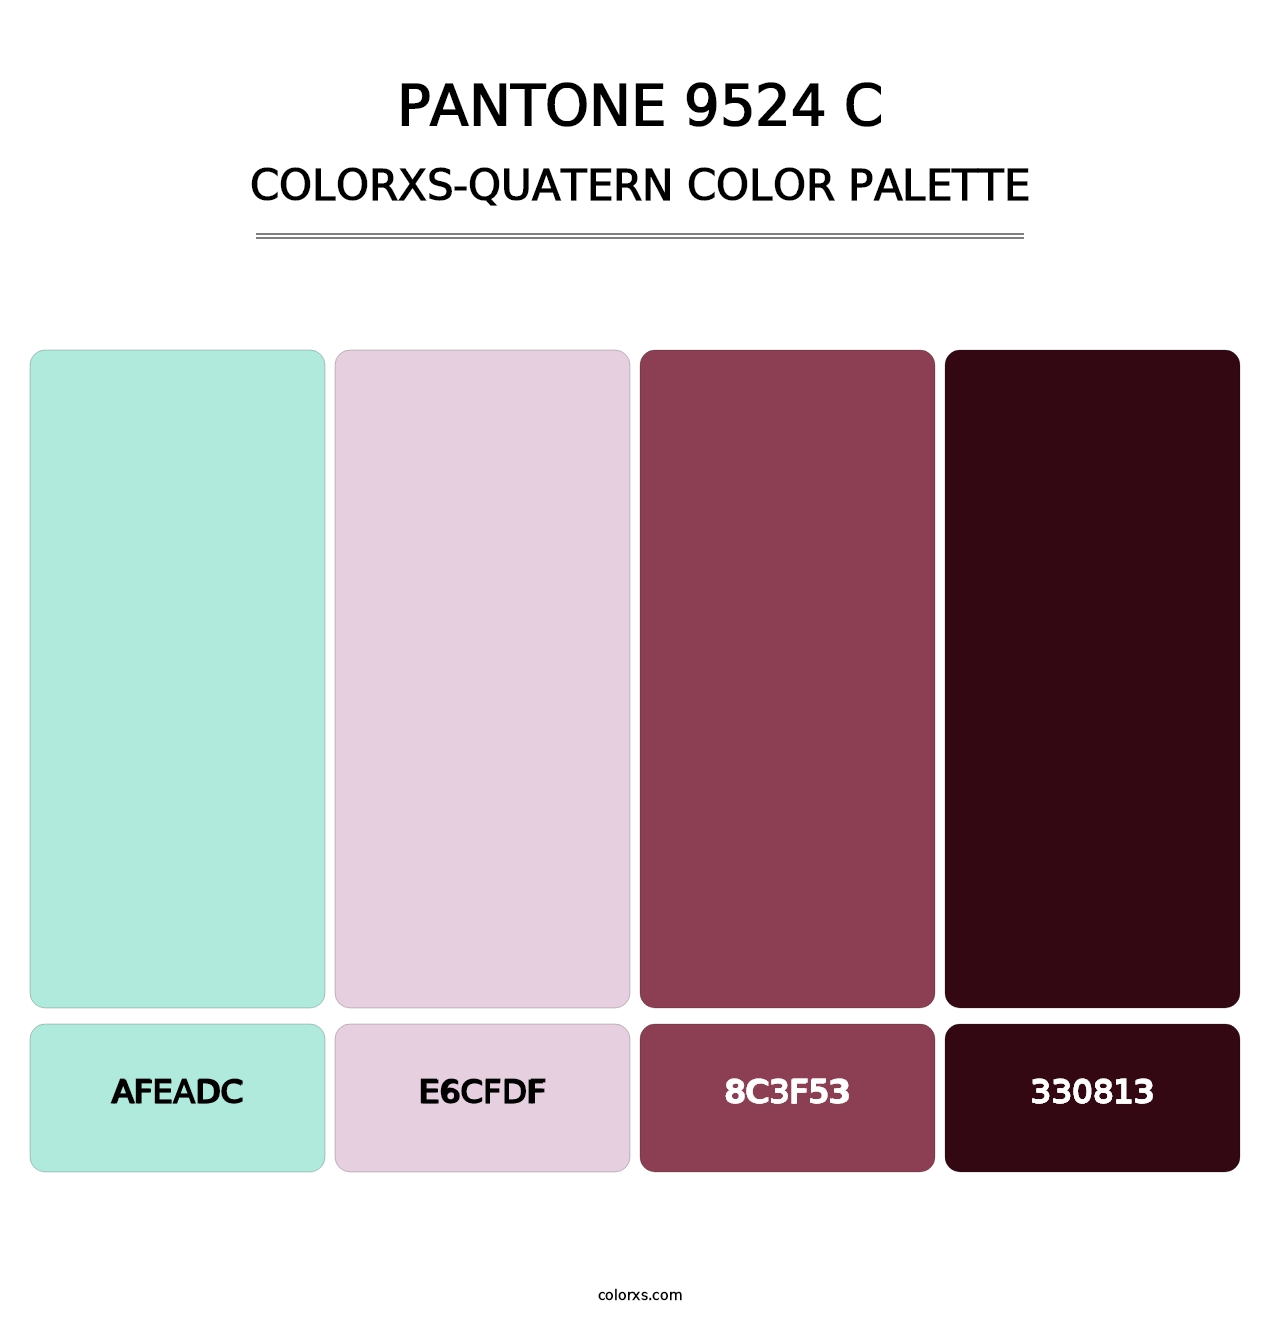 PANTONE 9524 C - Colorxs Quatern Palette